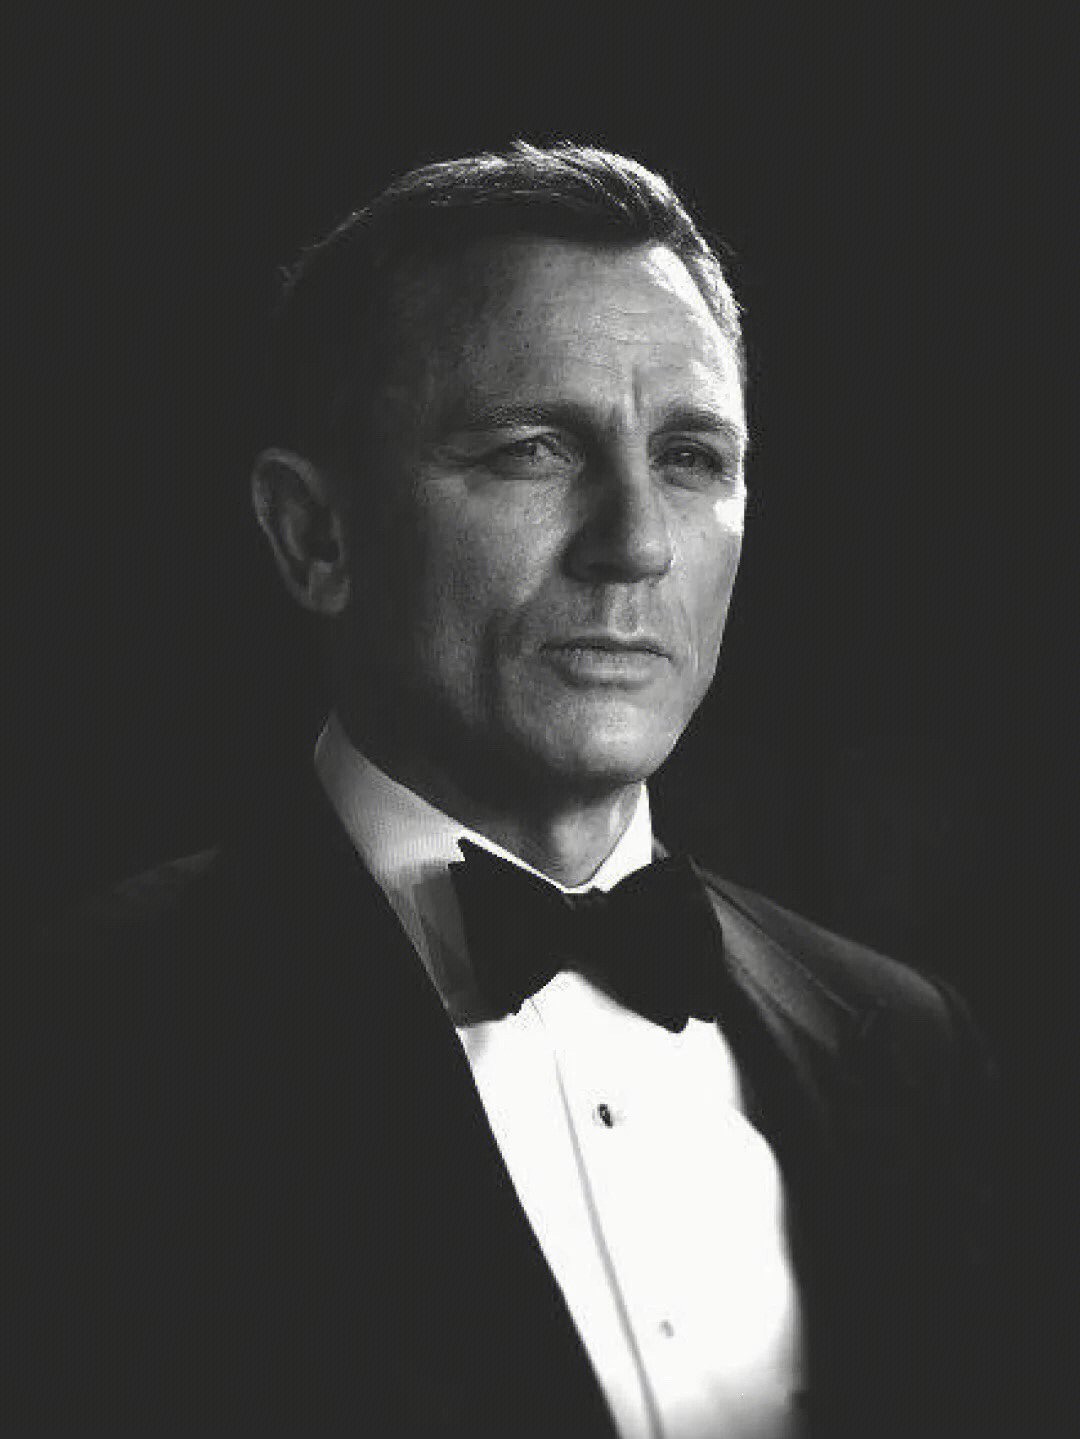 007:无暇赴死,导弹飞向邦德时候的电影配乐